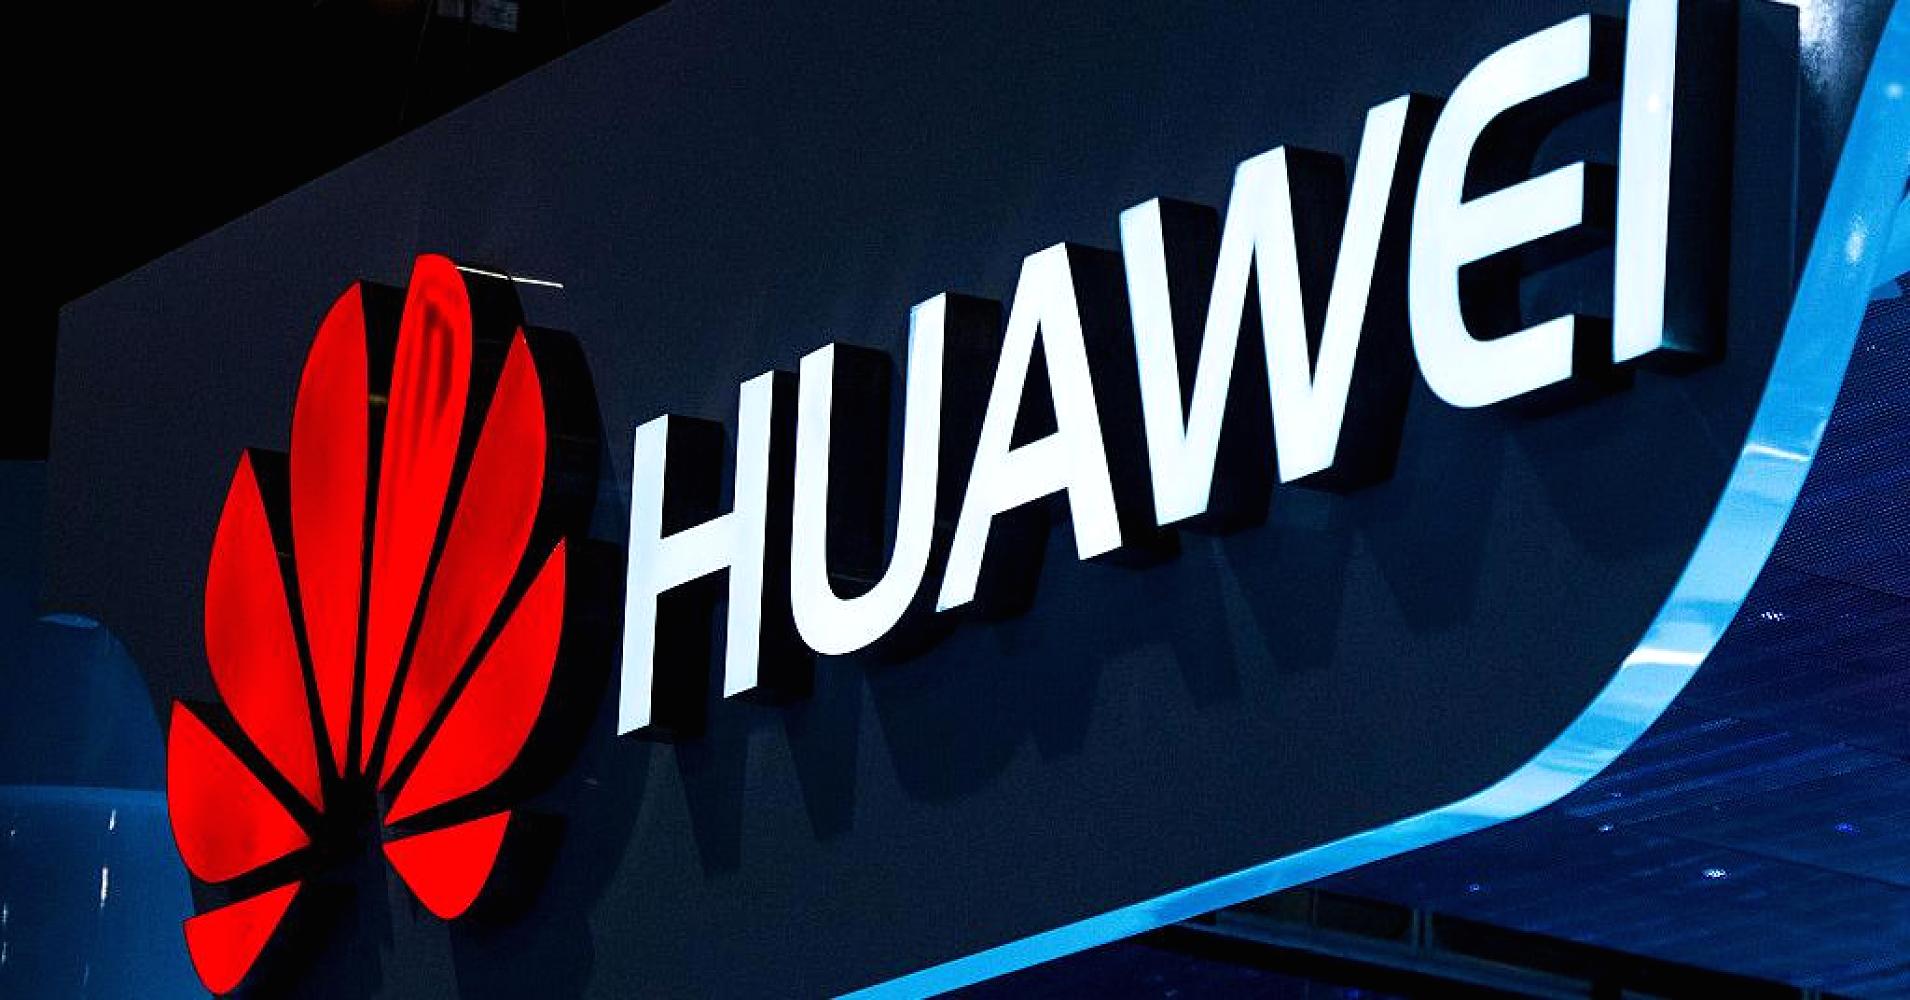 Huawei ประกาศศักดาทำยอดขายแซง Apple ขึ้นรั้งแบรนด์มือถือเบอร์ 2 โลกเป็นครั้งแรก